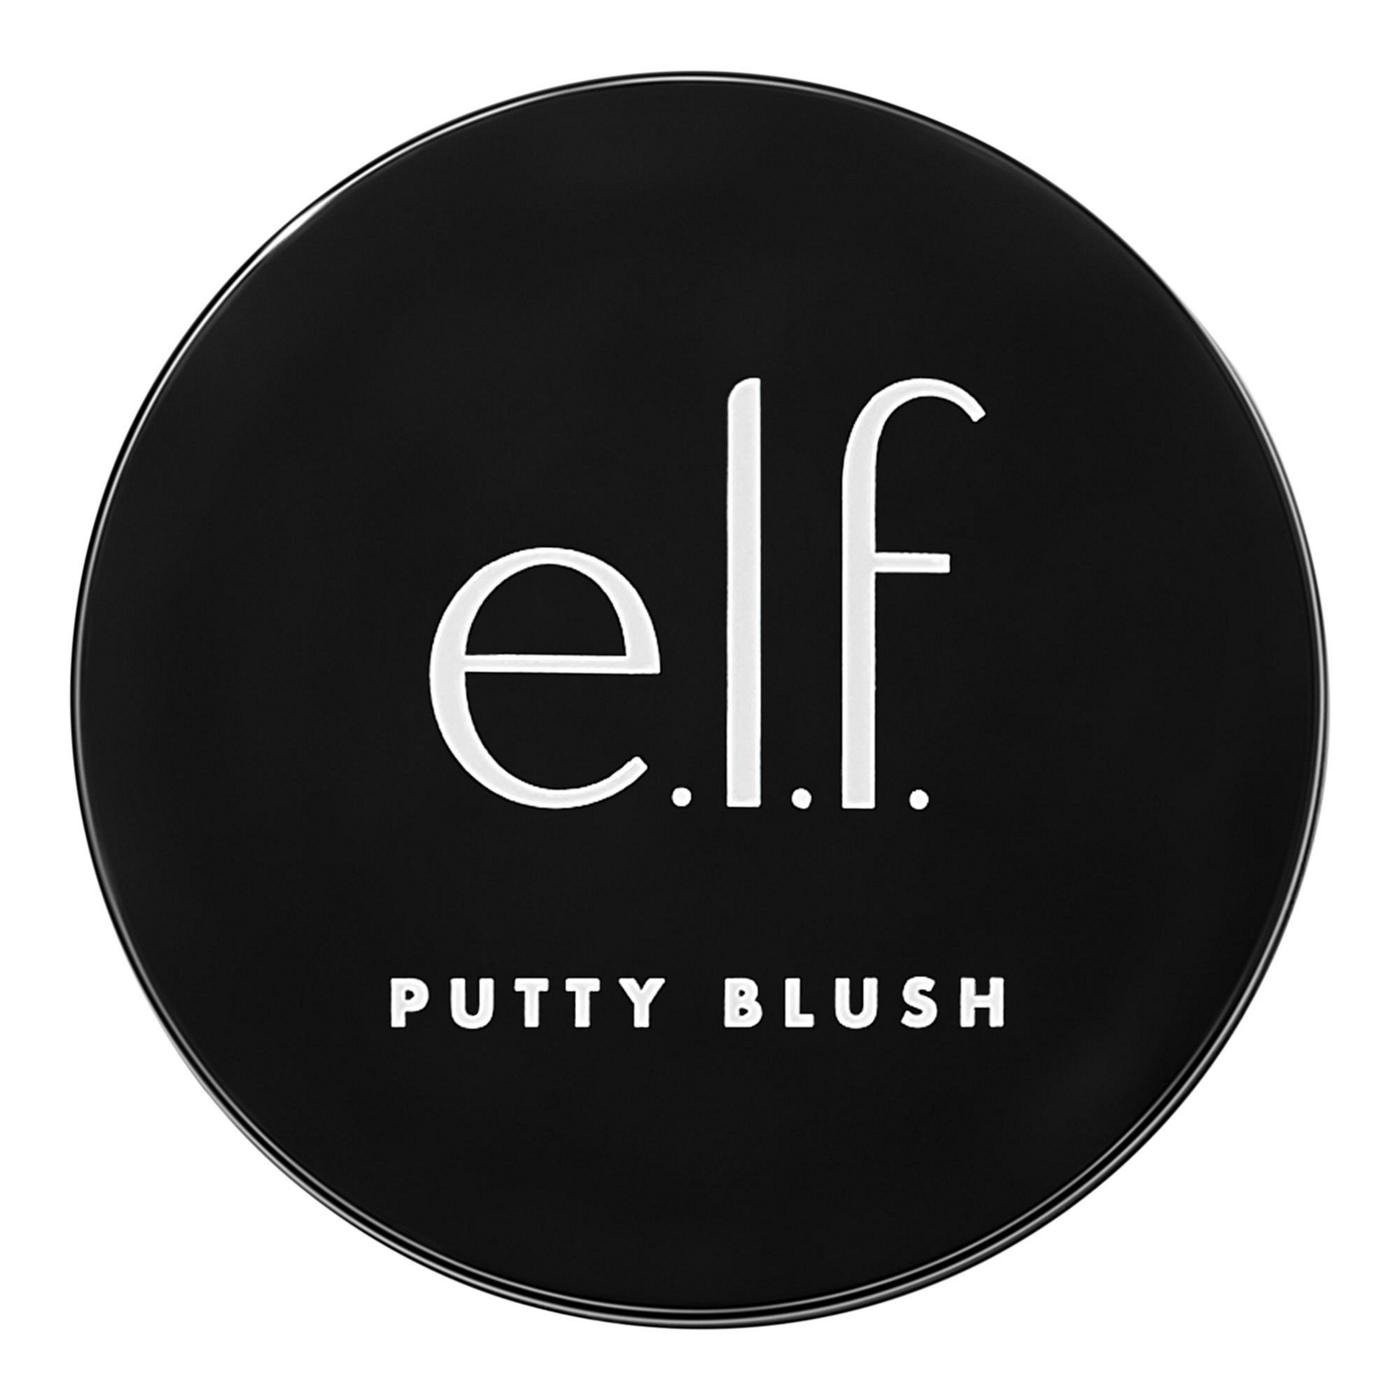 e.l.f. Putty Blush - Bahamas; image 7 of 7